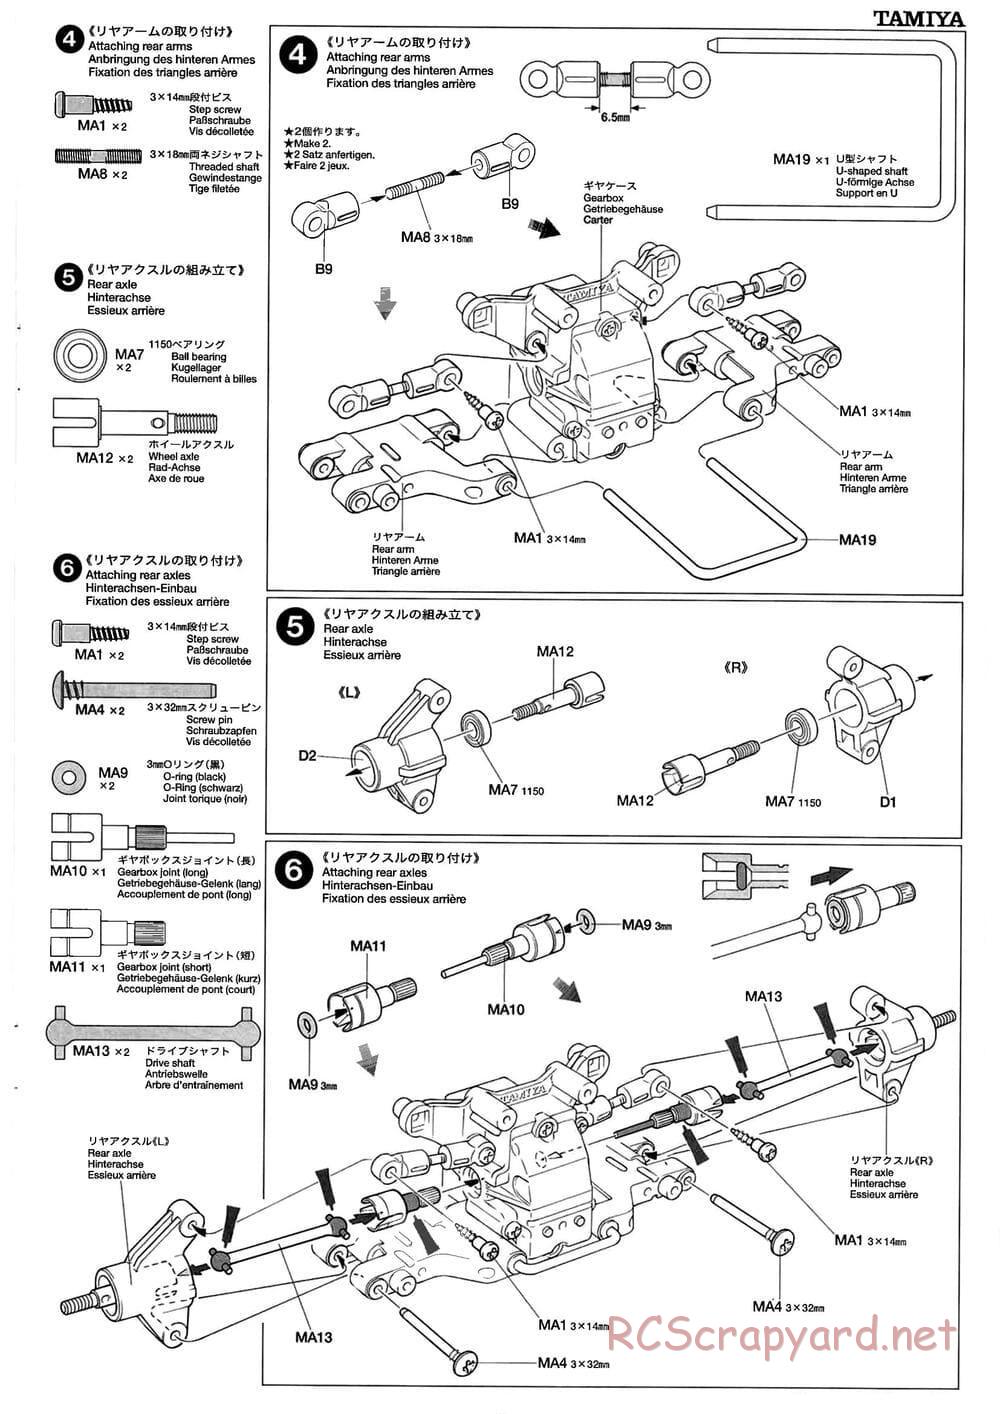 Tamiya - TB-01 Chassis - Manual - Page 5